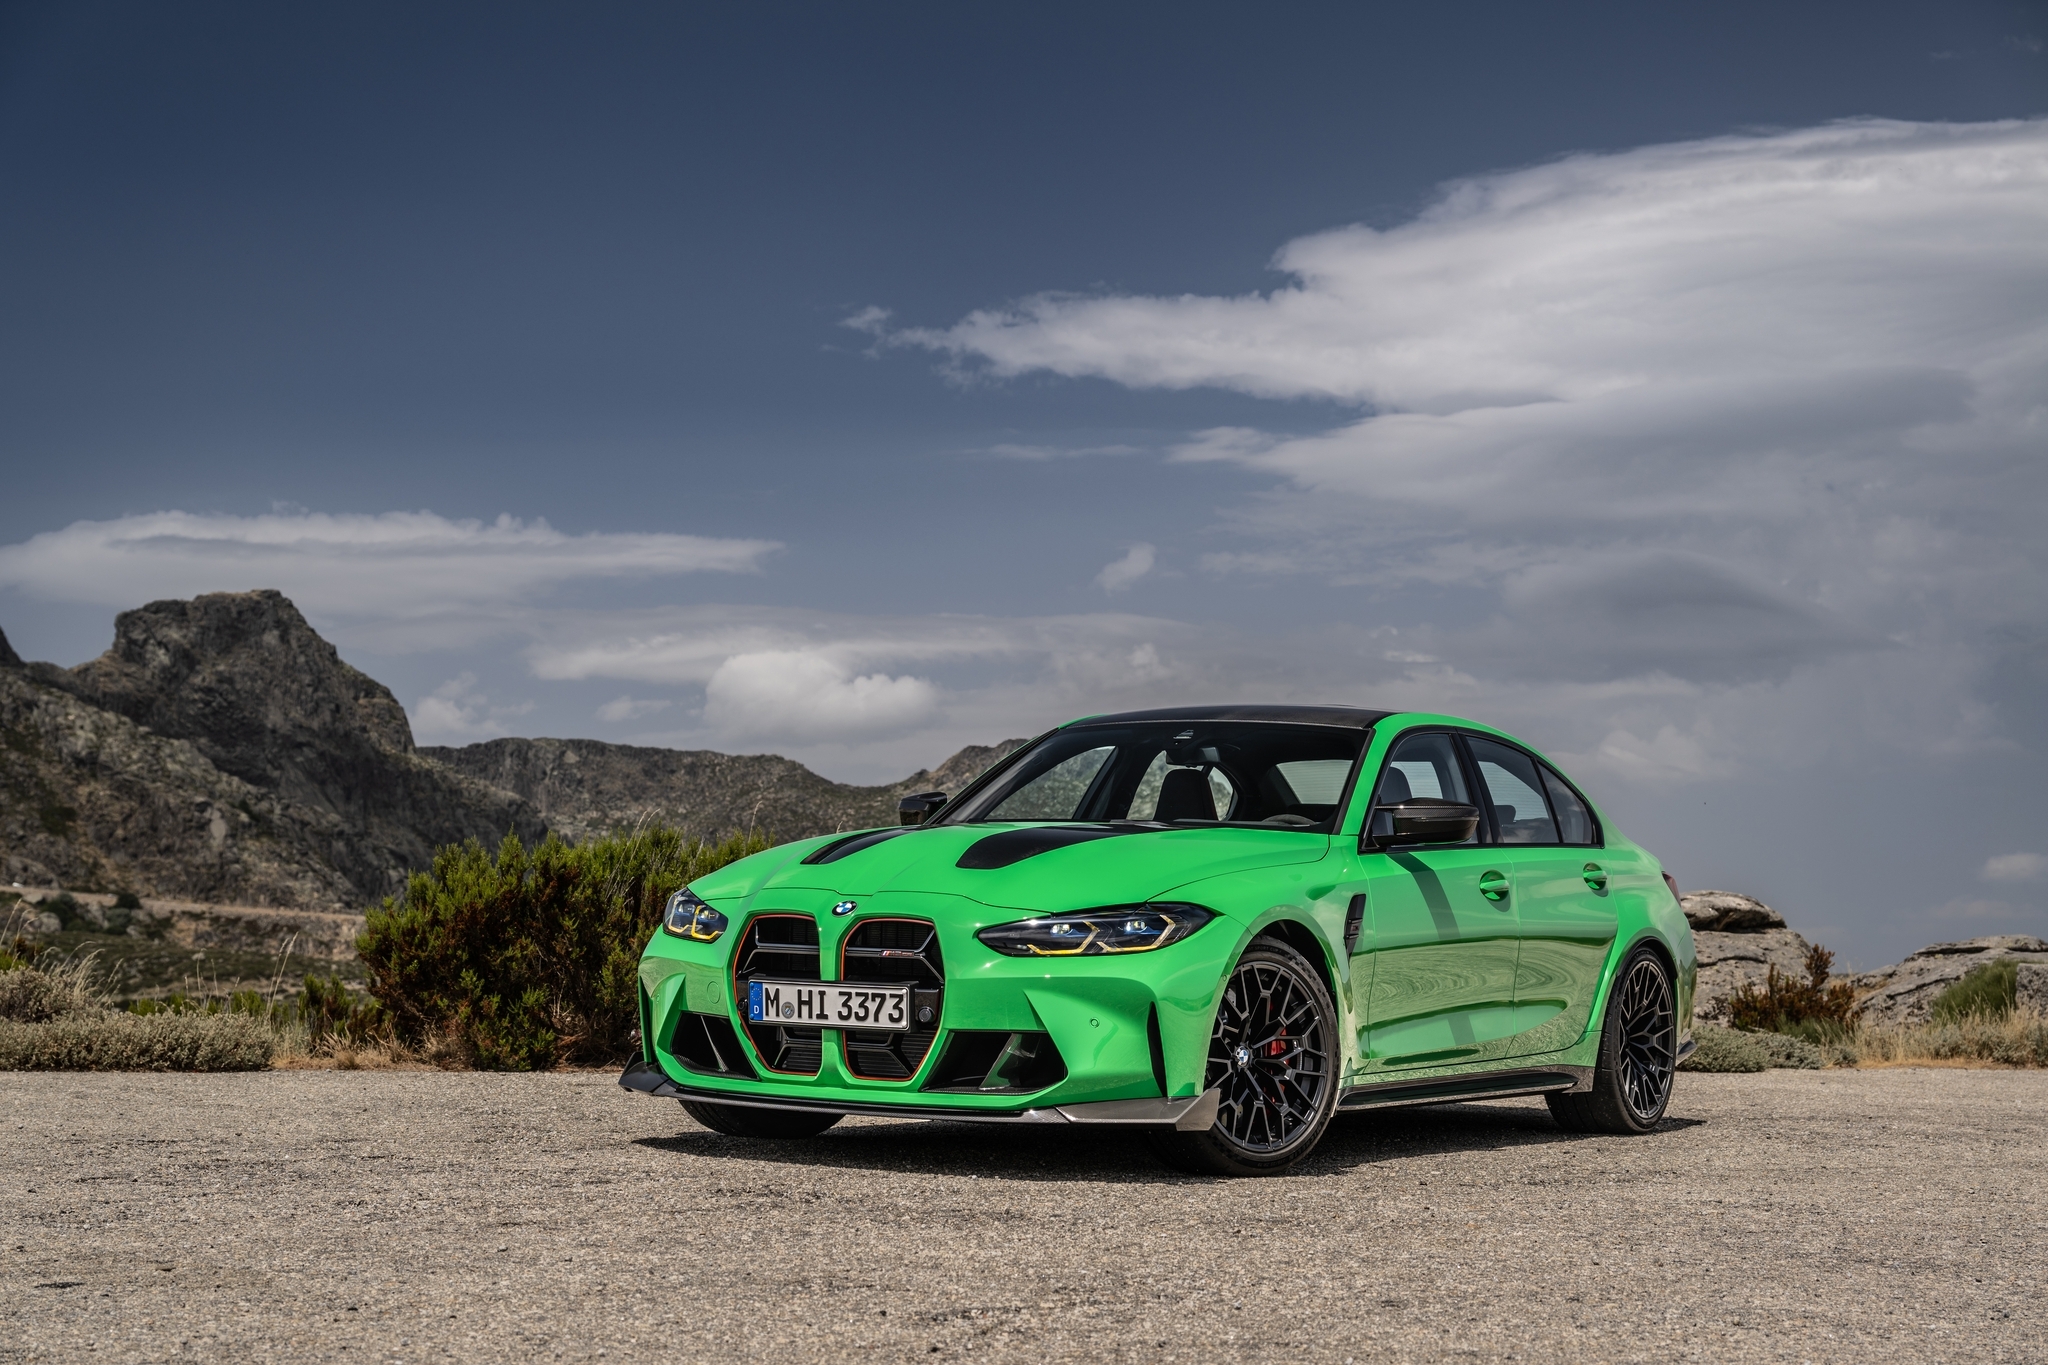 BMW выпустит лимитированную версию экстремального суперуниверсала M3 Touring CS